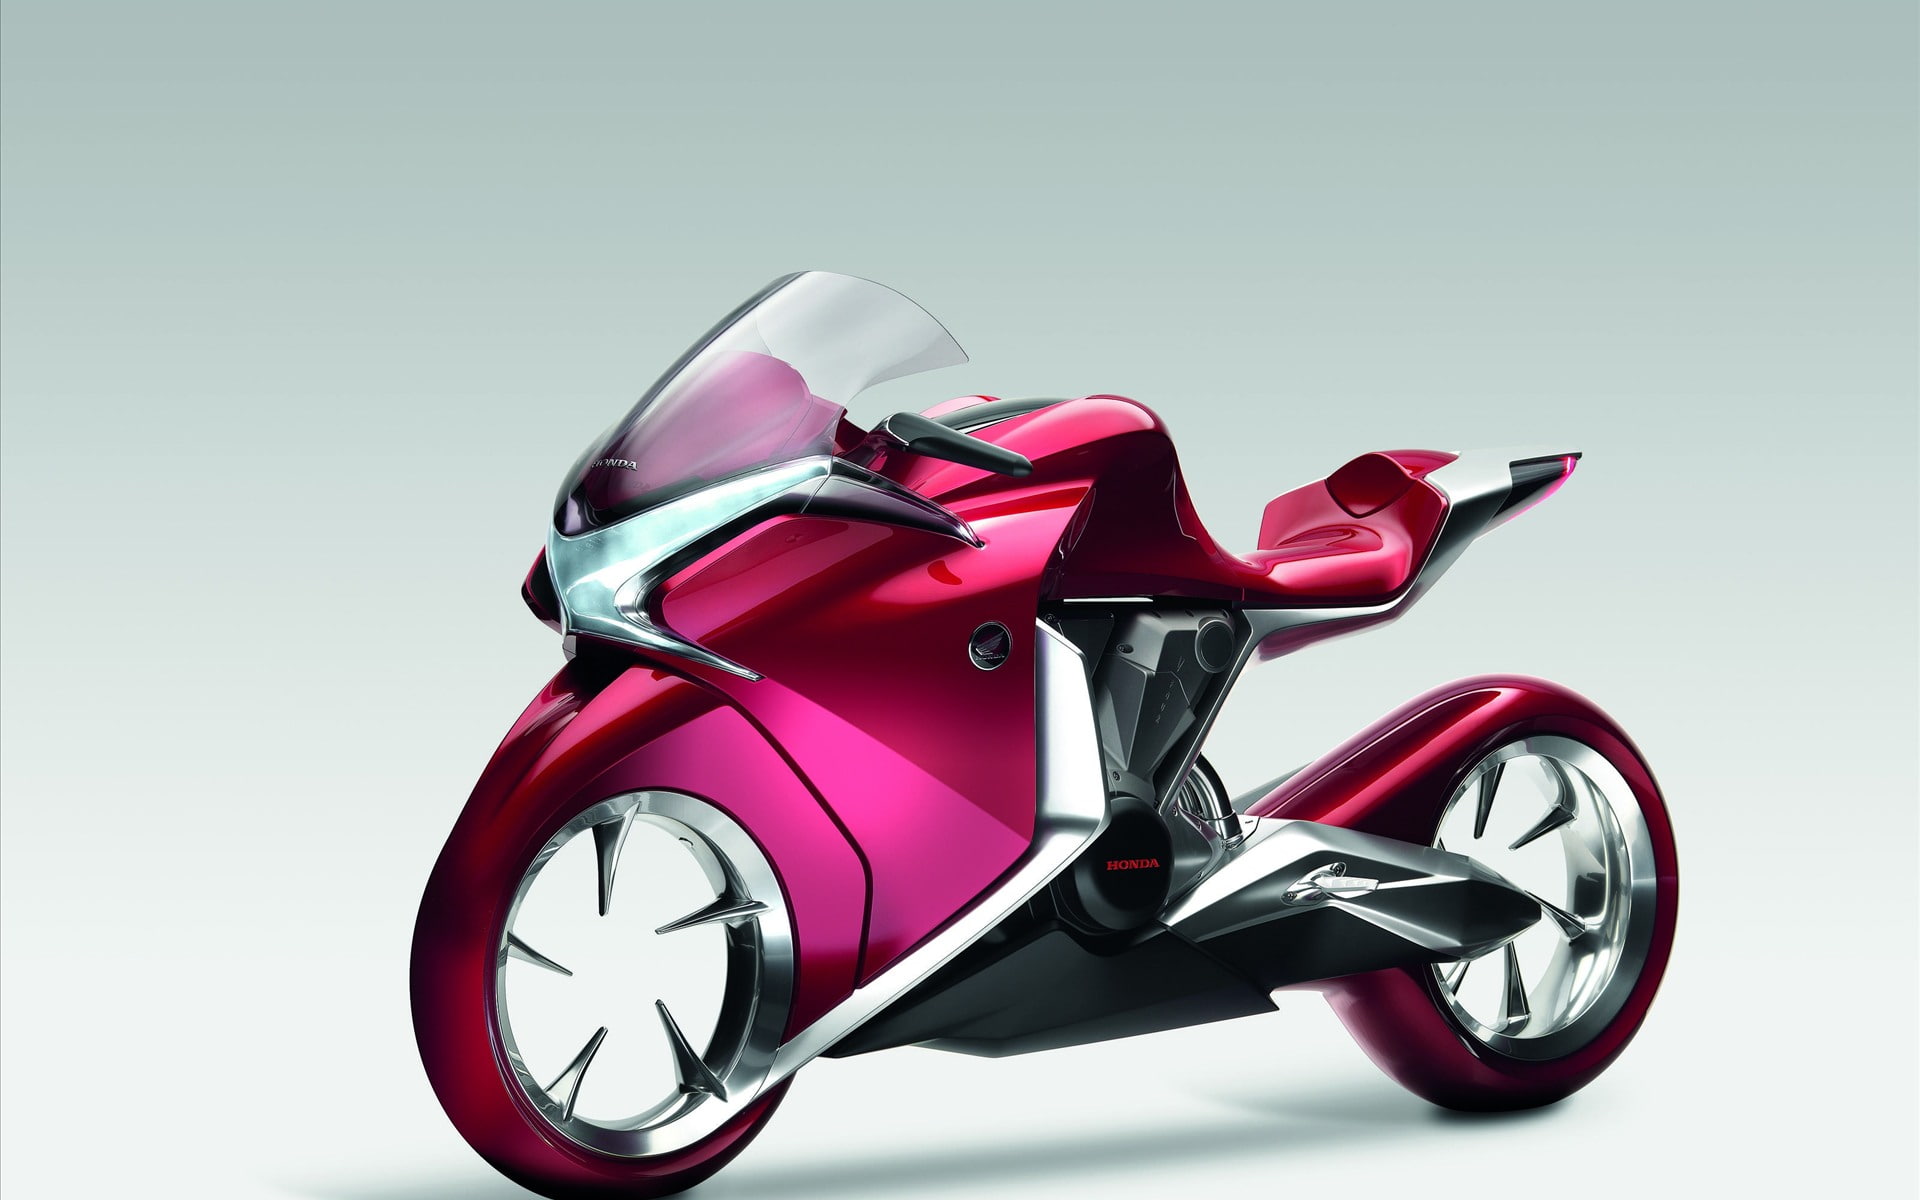 Honda V4 Concept Widescreen Bike, pink and black sports bike